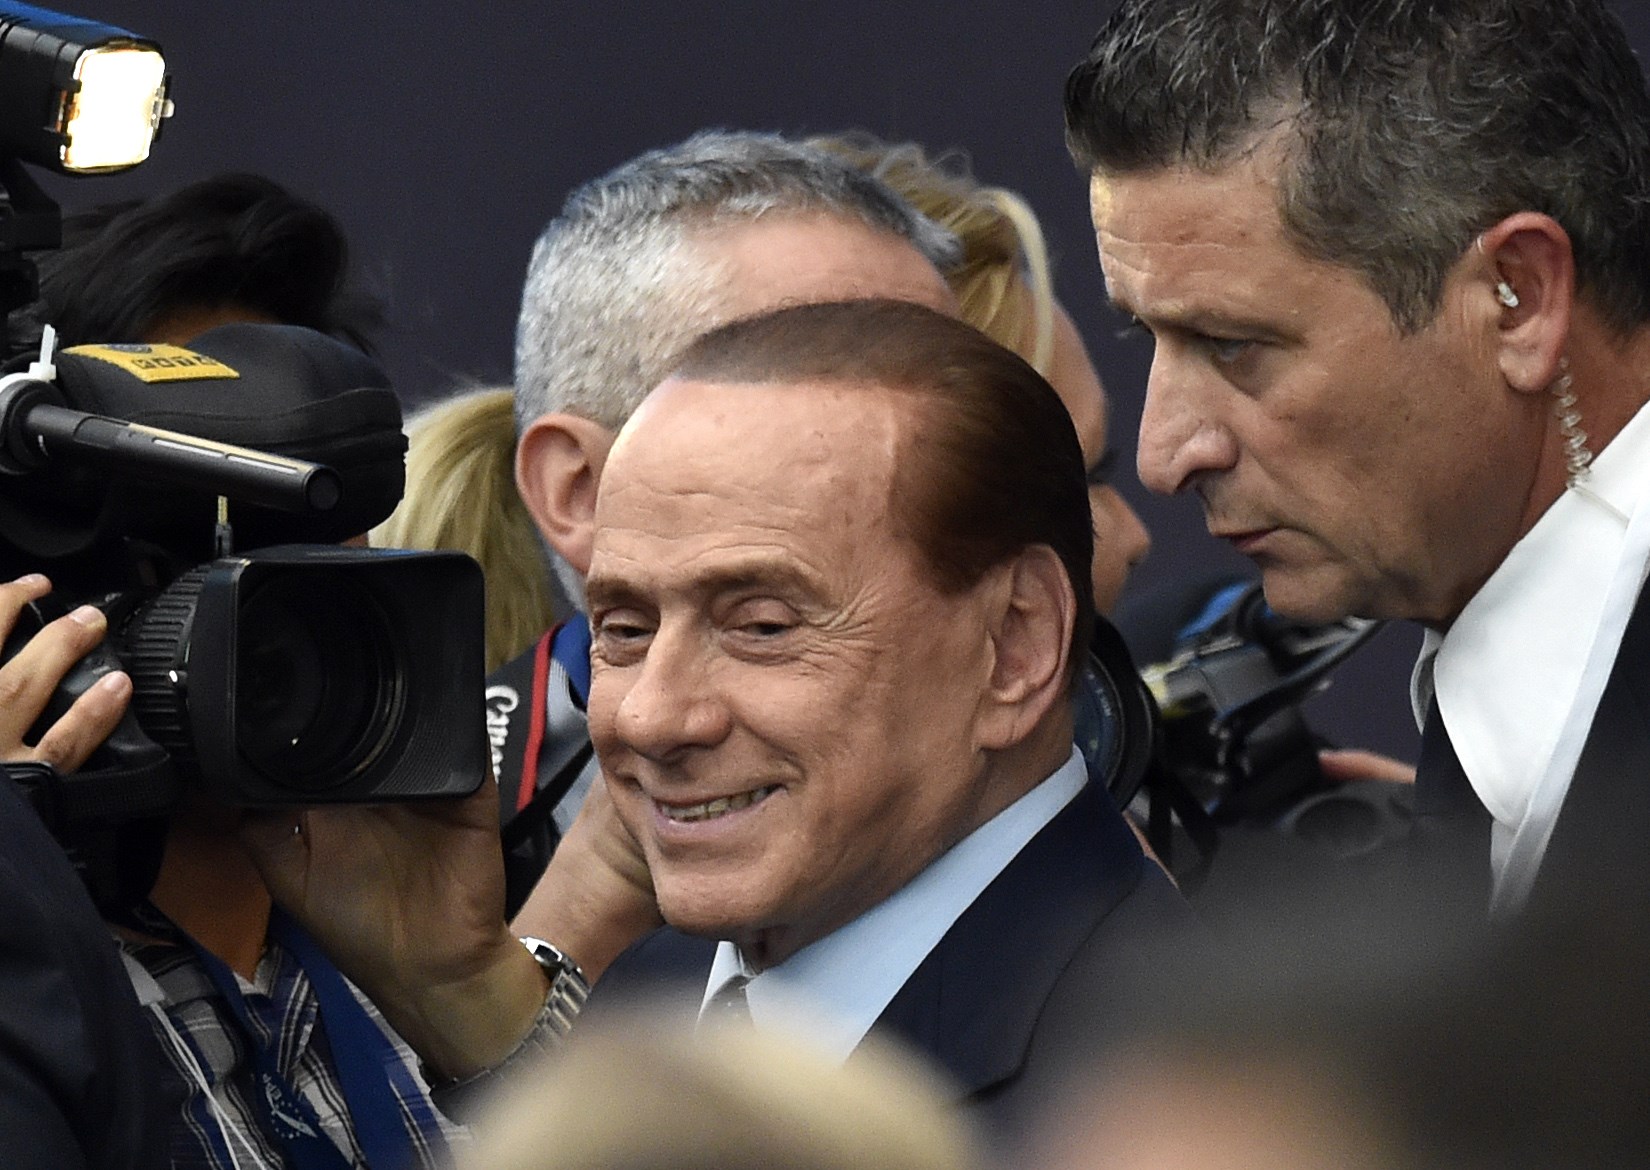 Donald Trump & Silvio Berlusconi: 5 Fast Facts | Heavy.com